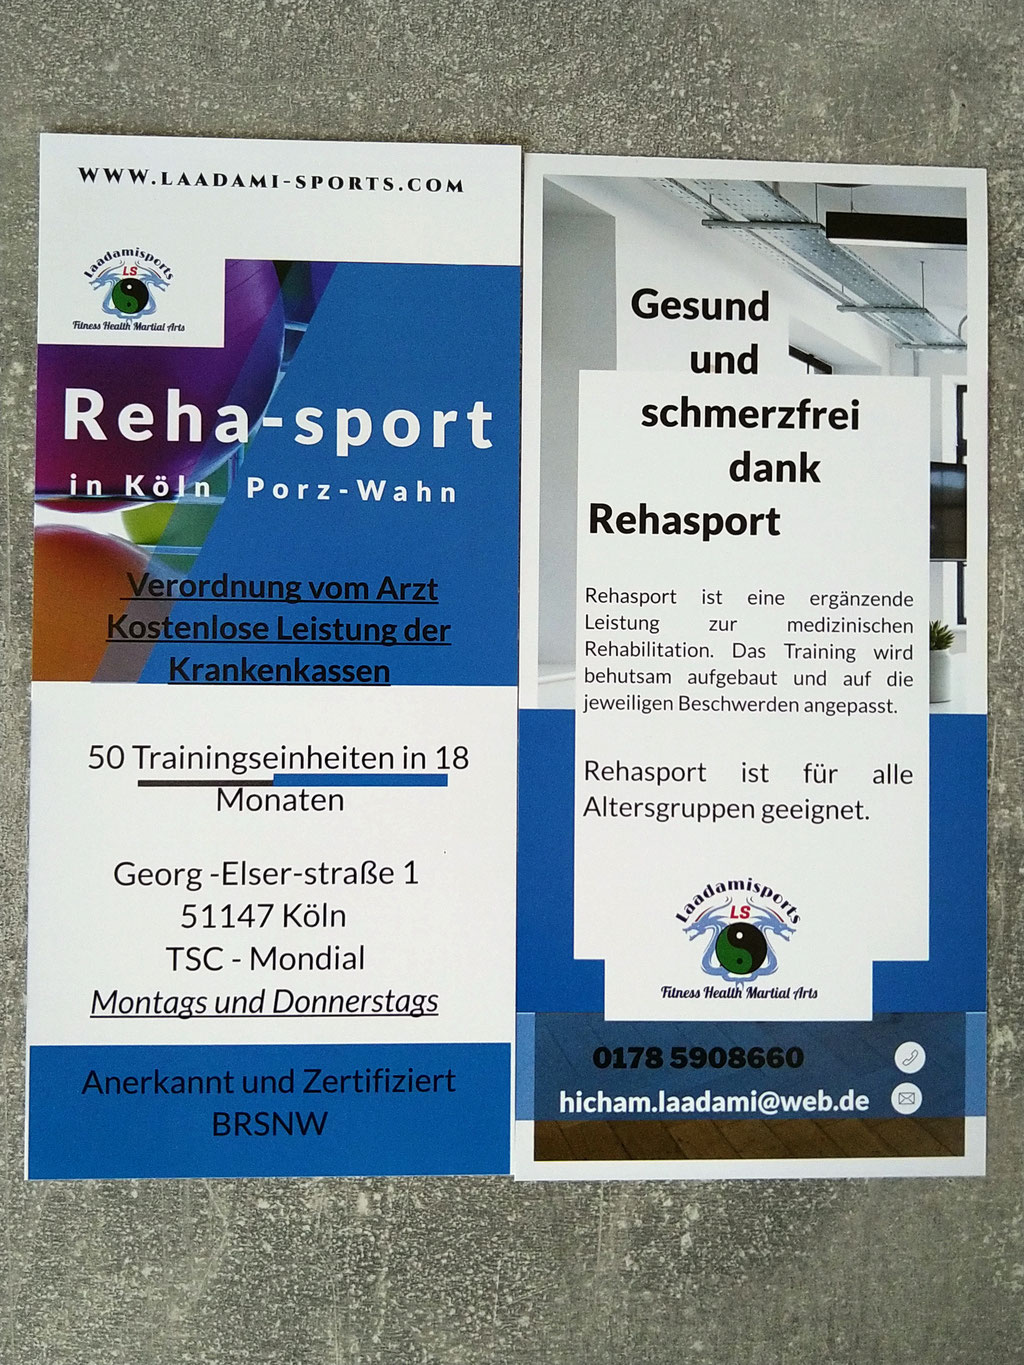 Achtung Neu: Rehabilitationssport in Köln Porz- Wahn ( Mehr Infos scrollen Sie weiter nach unten)